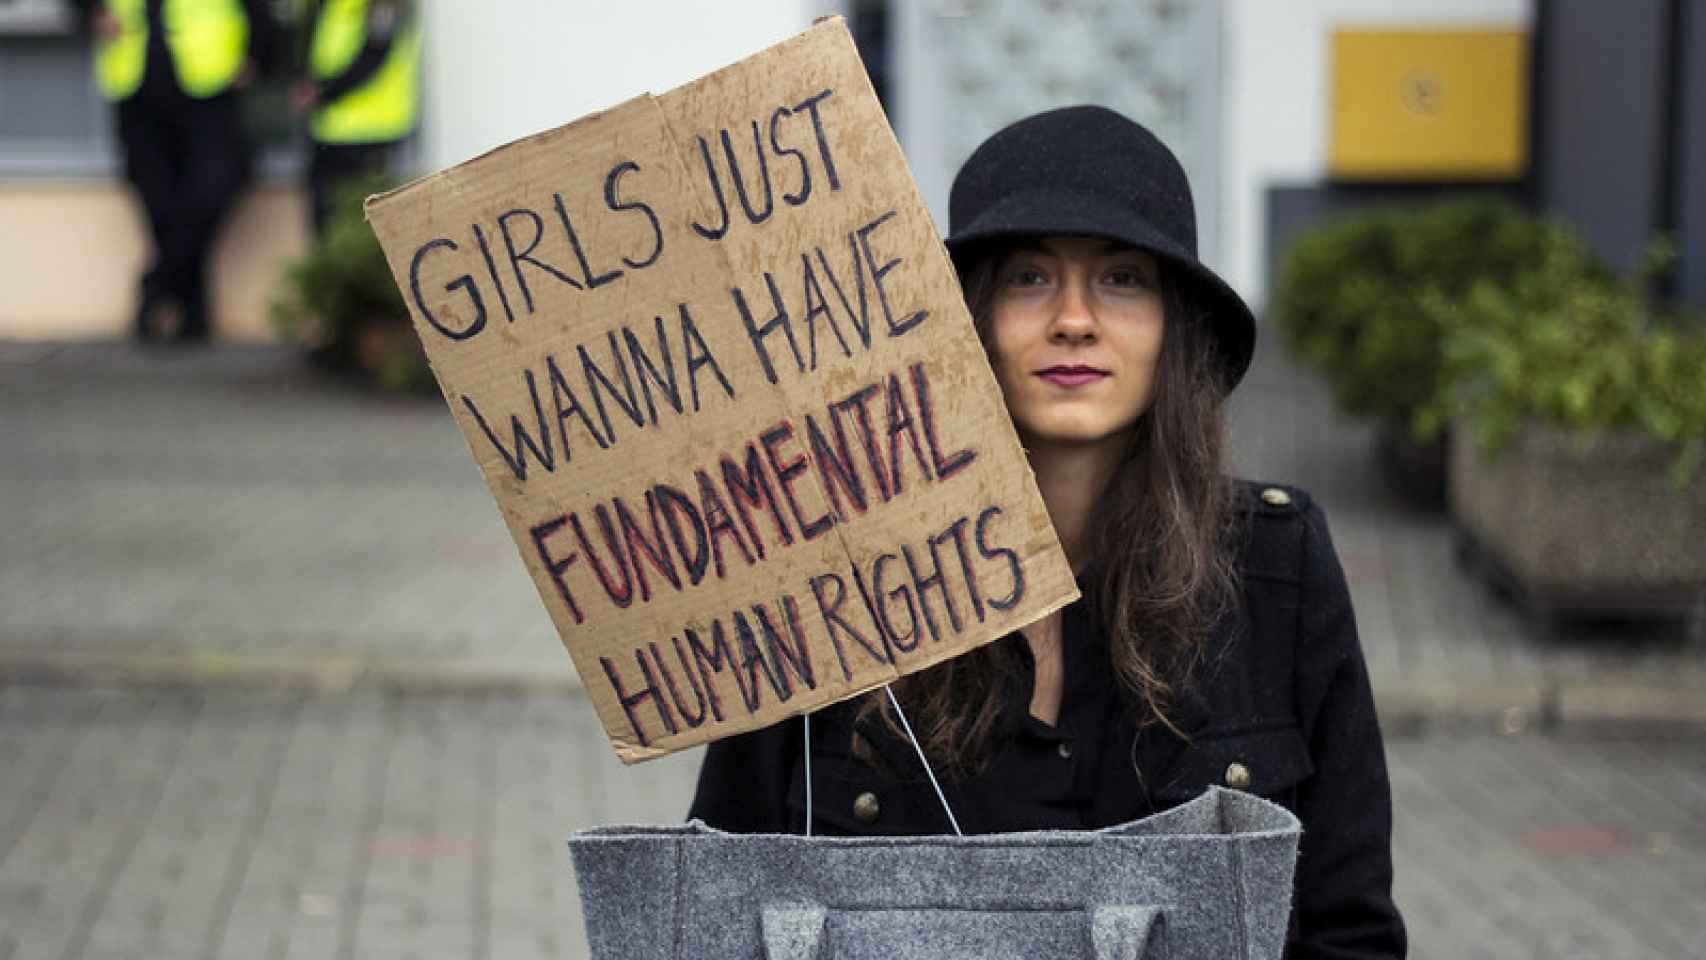 Una joven sostiene un cartel que dice: Las chicas solo quieren derechos fundamentales.